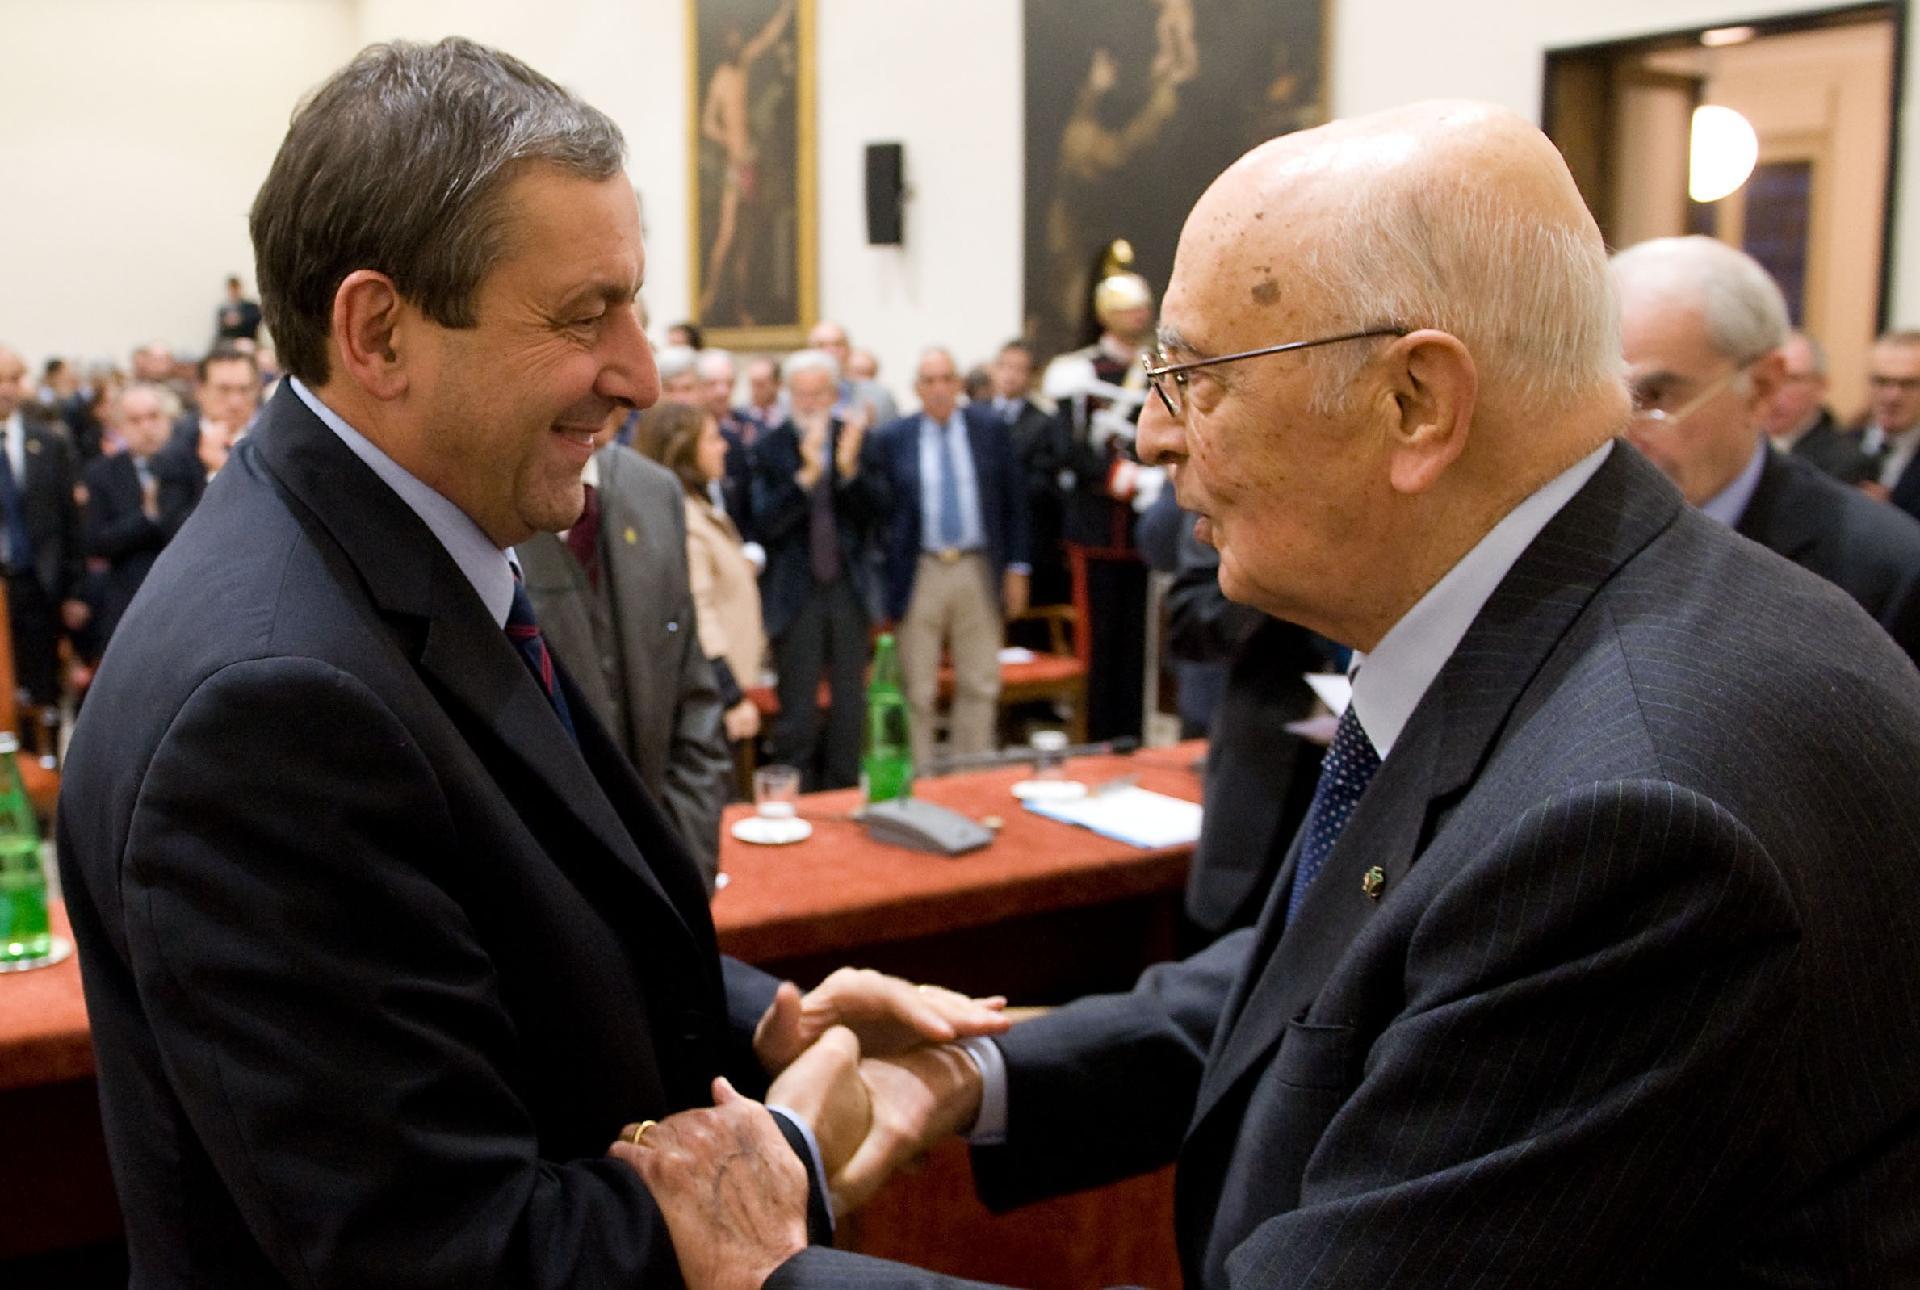 Il Presidente Giorgio Napolitano con Francesco Profumo, Presidente del Consiglio nazionale delle ricerche , al termine del convegno &quot;Europa 2020: rendere l'Italia protagonista&quot;